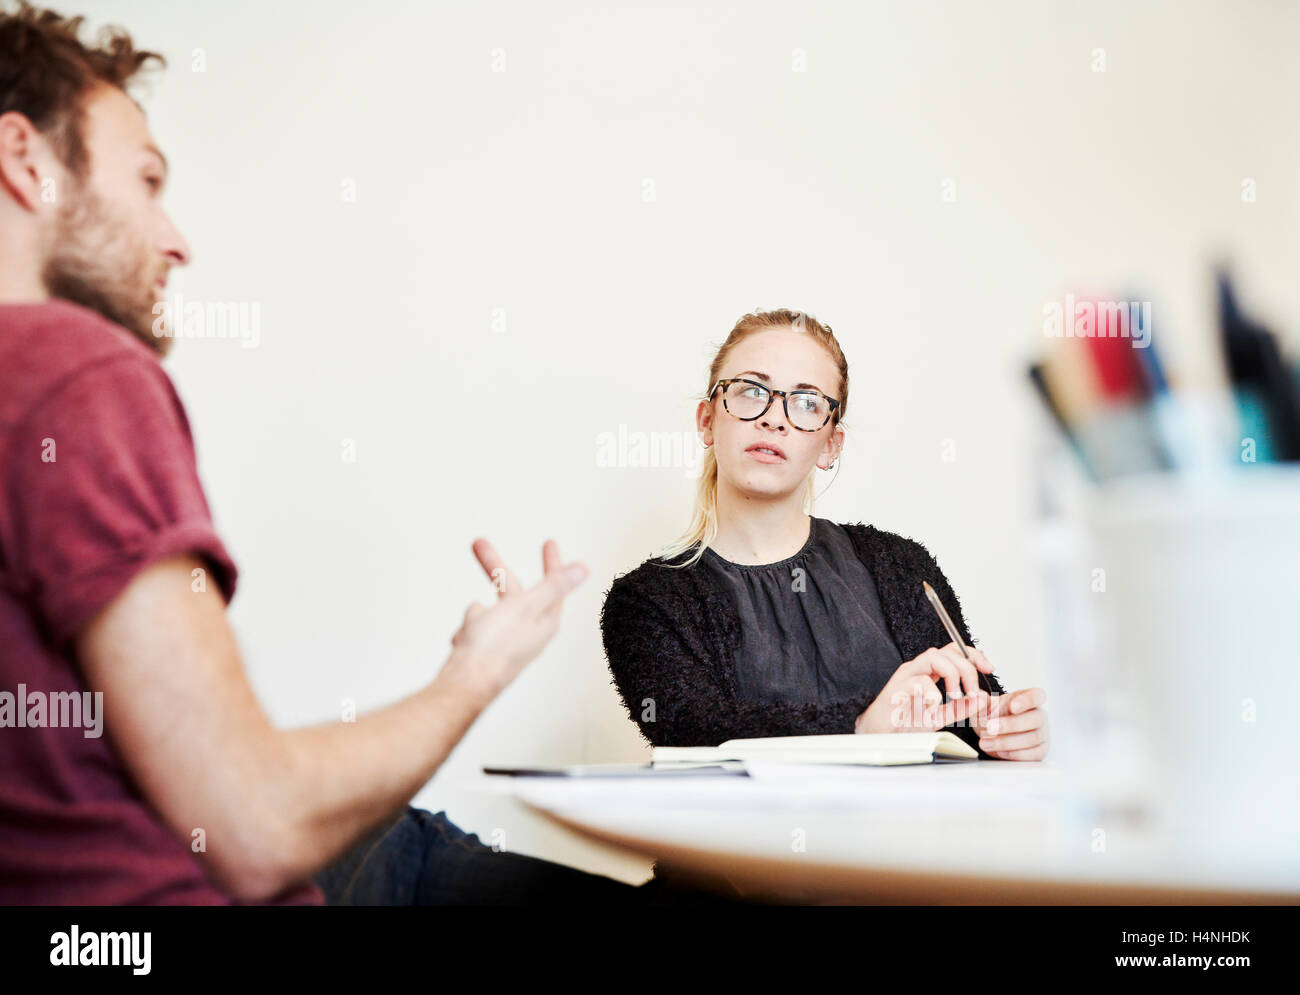 Zwei Personen in einer Besprechung, gestikulierend Mann und eine Frau hören. Stockfoto